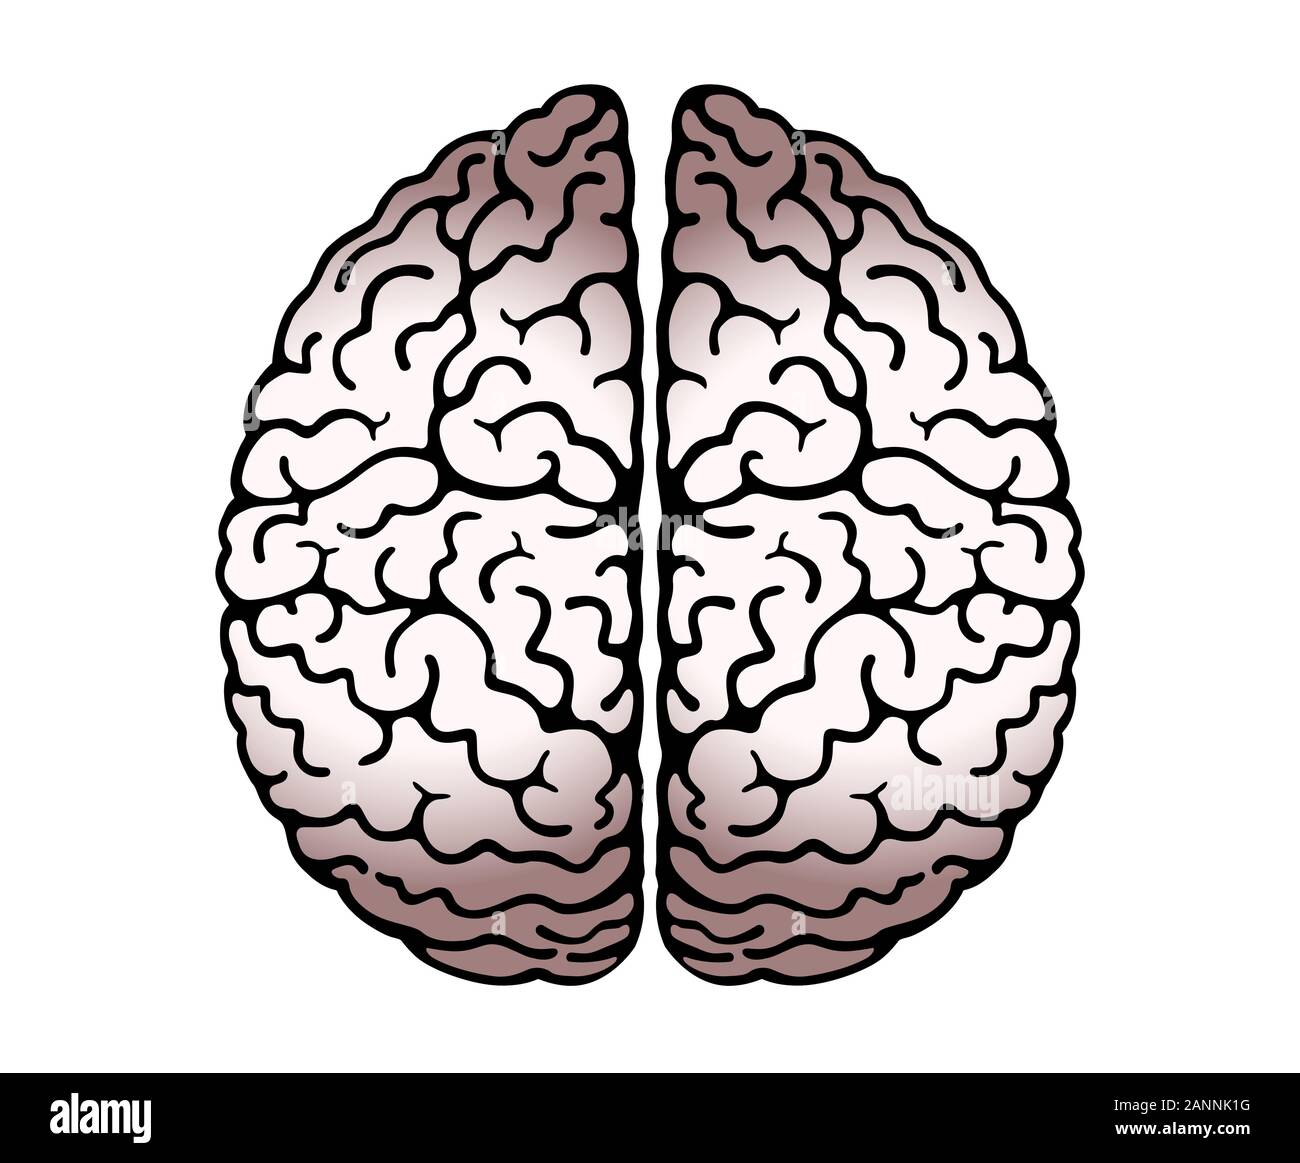 Profilo di vettore illustrazione del cervello umano su sfondo bianco. Emisferi cerebrali, convoluzioni della mente il cervello, il cervello della piega. Vista da sopra, Illustrazione Vettoriale